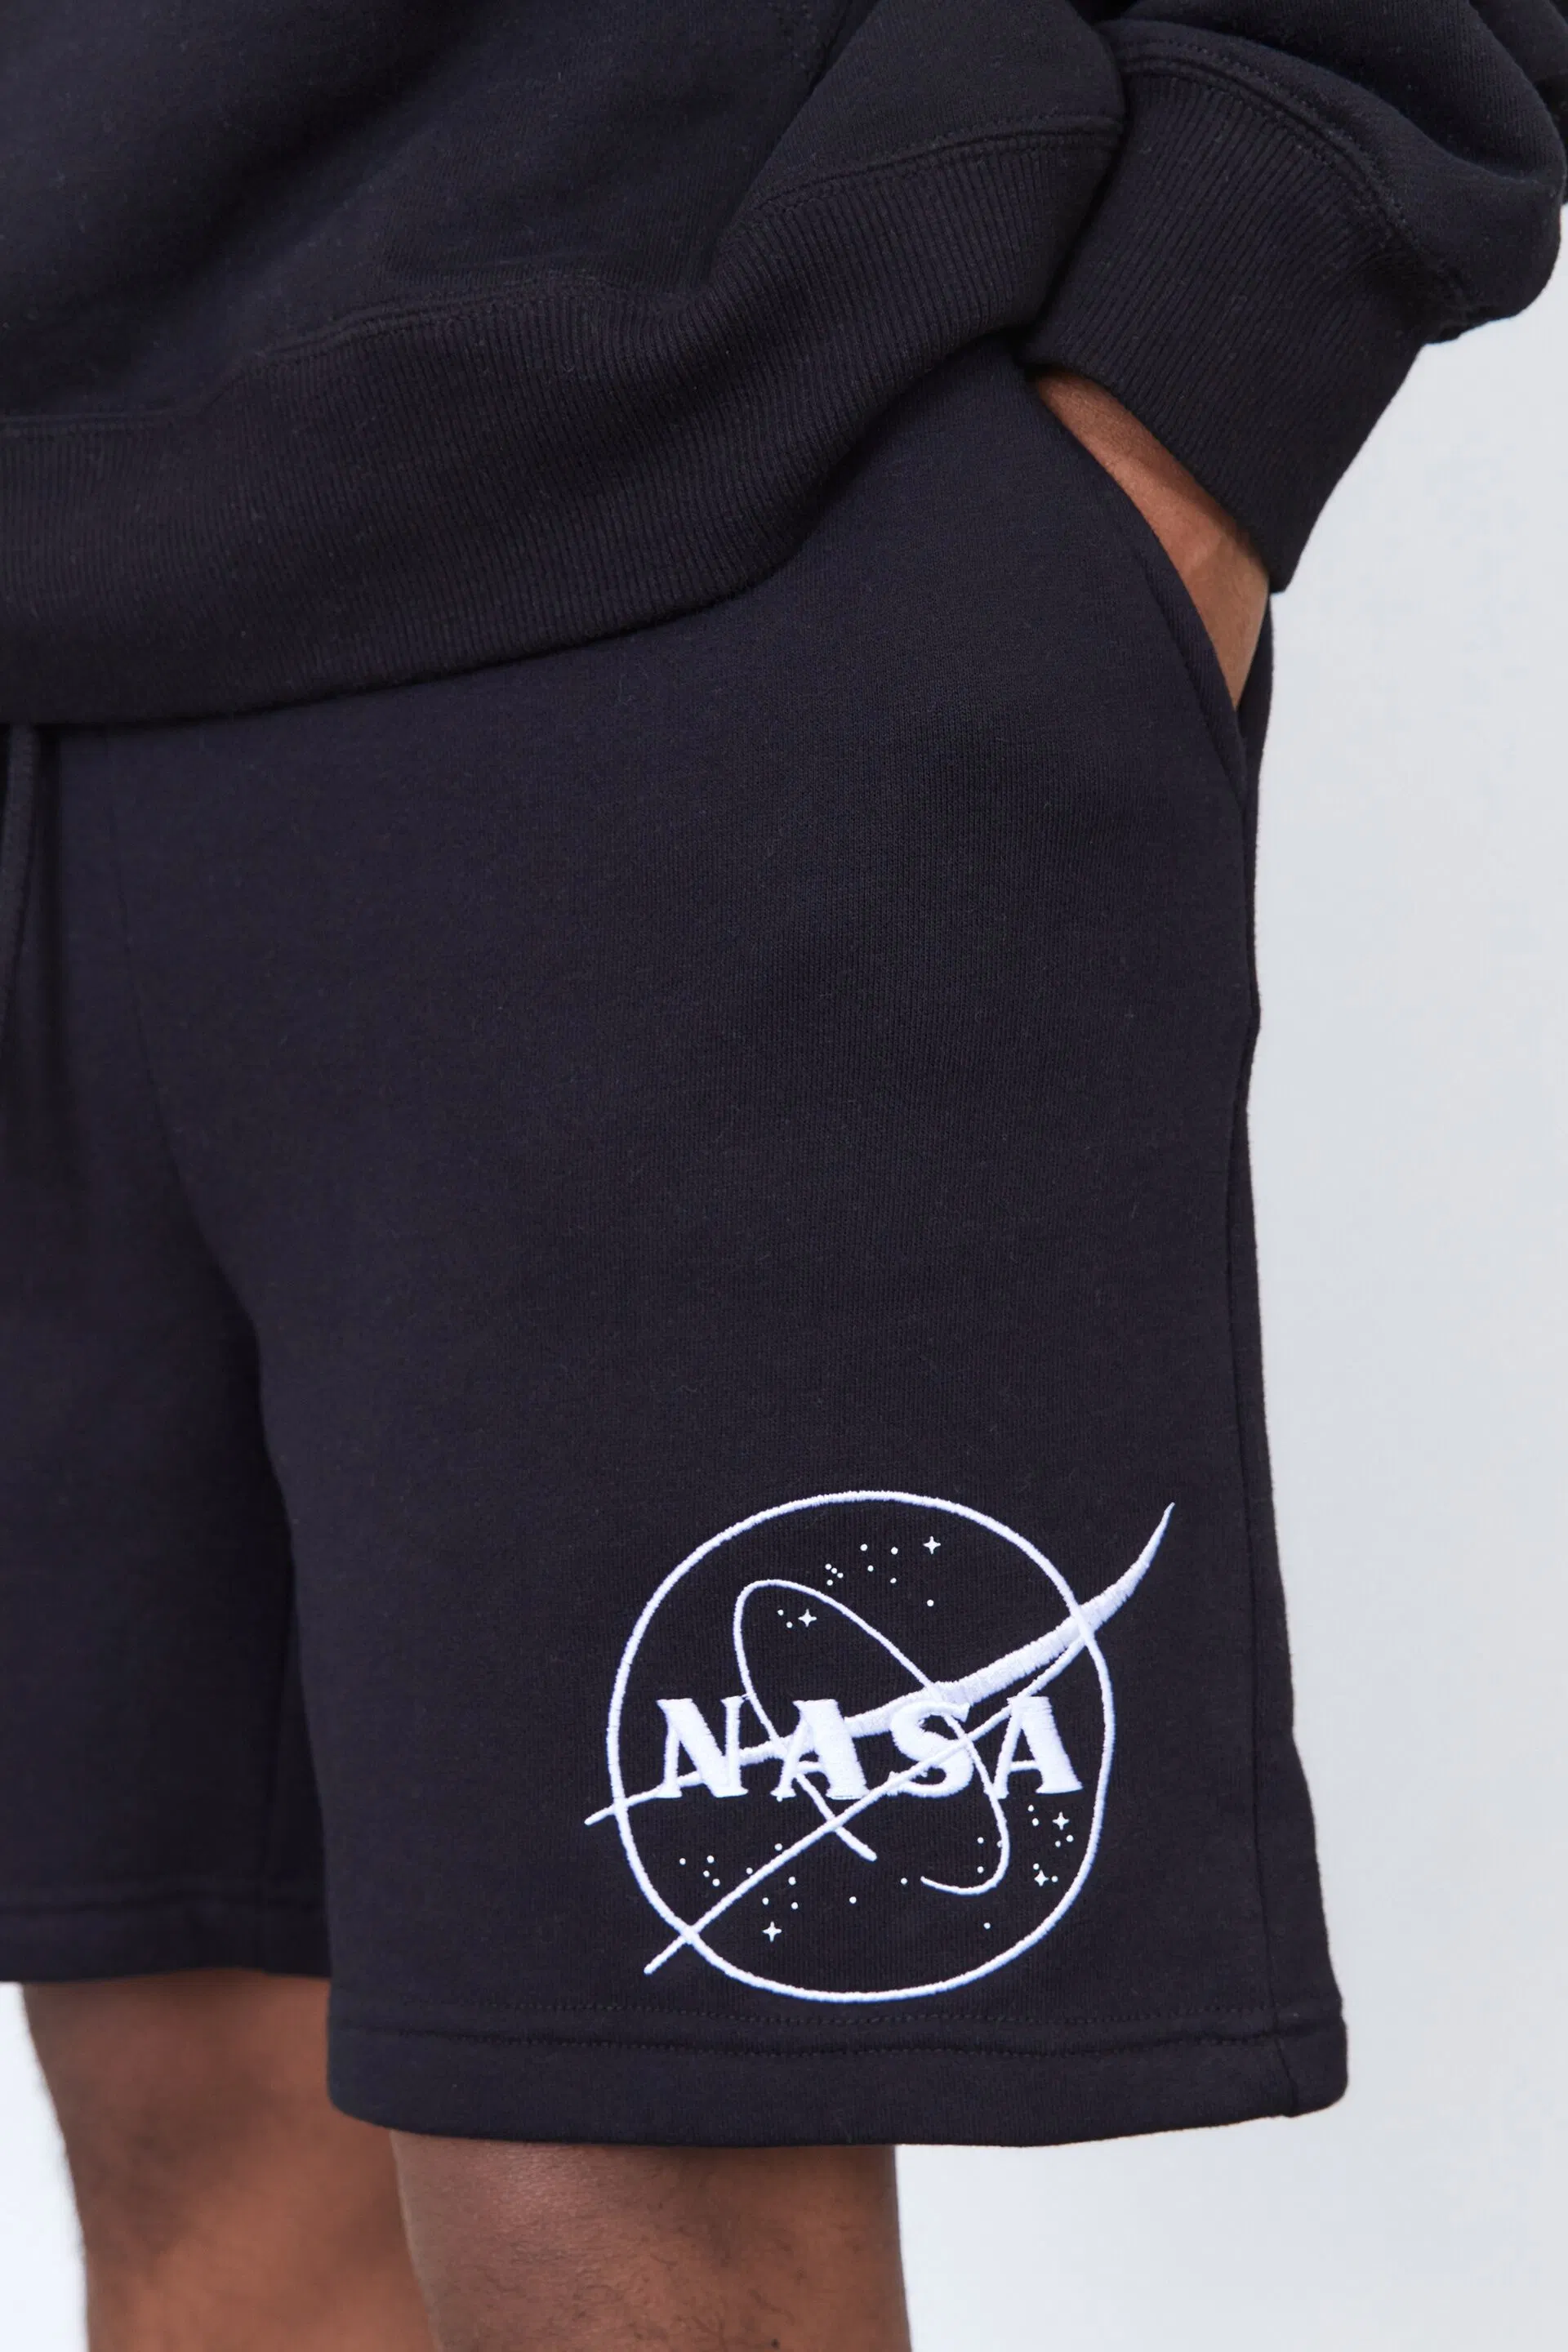 O logotipo personalizado Imprimir ou bordados Sweatpants curtos por grosso 100% algodão desgaste de ginásio homens' S curtos